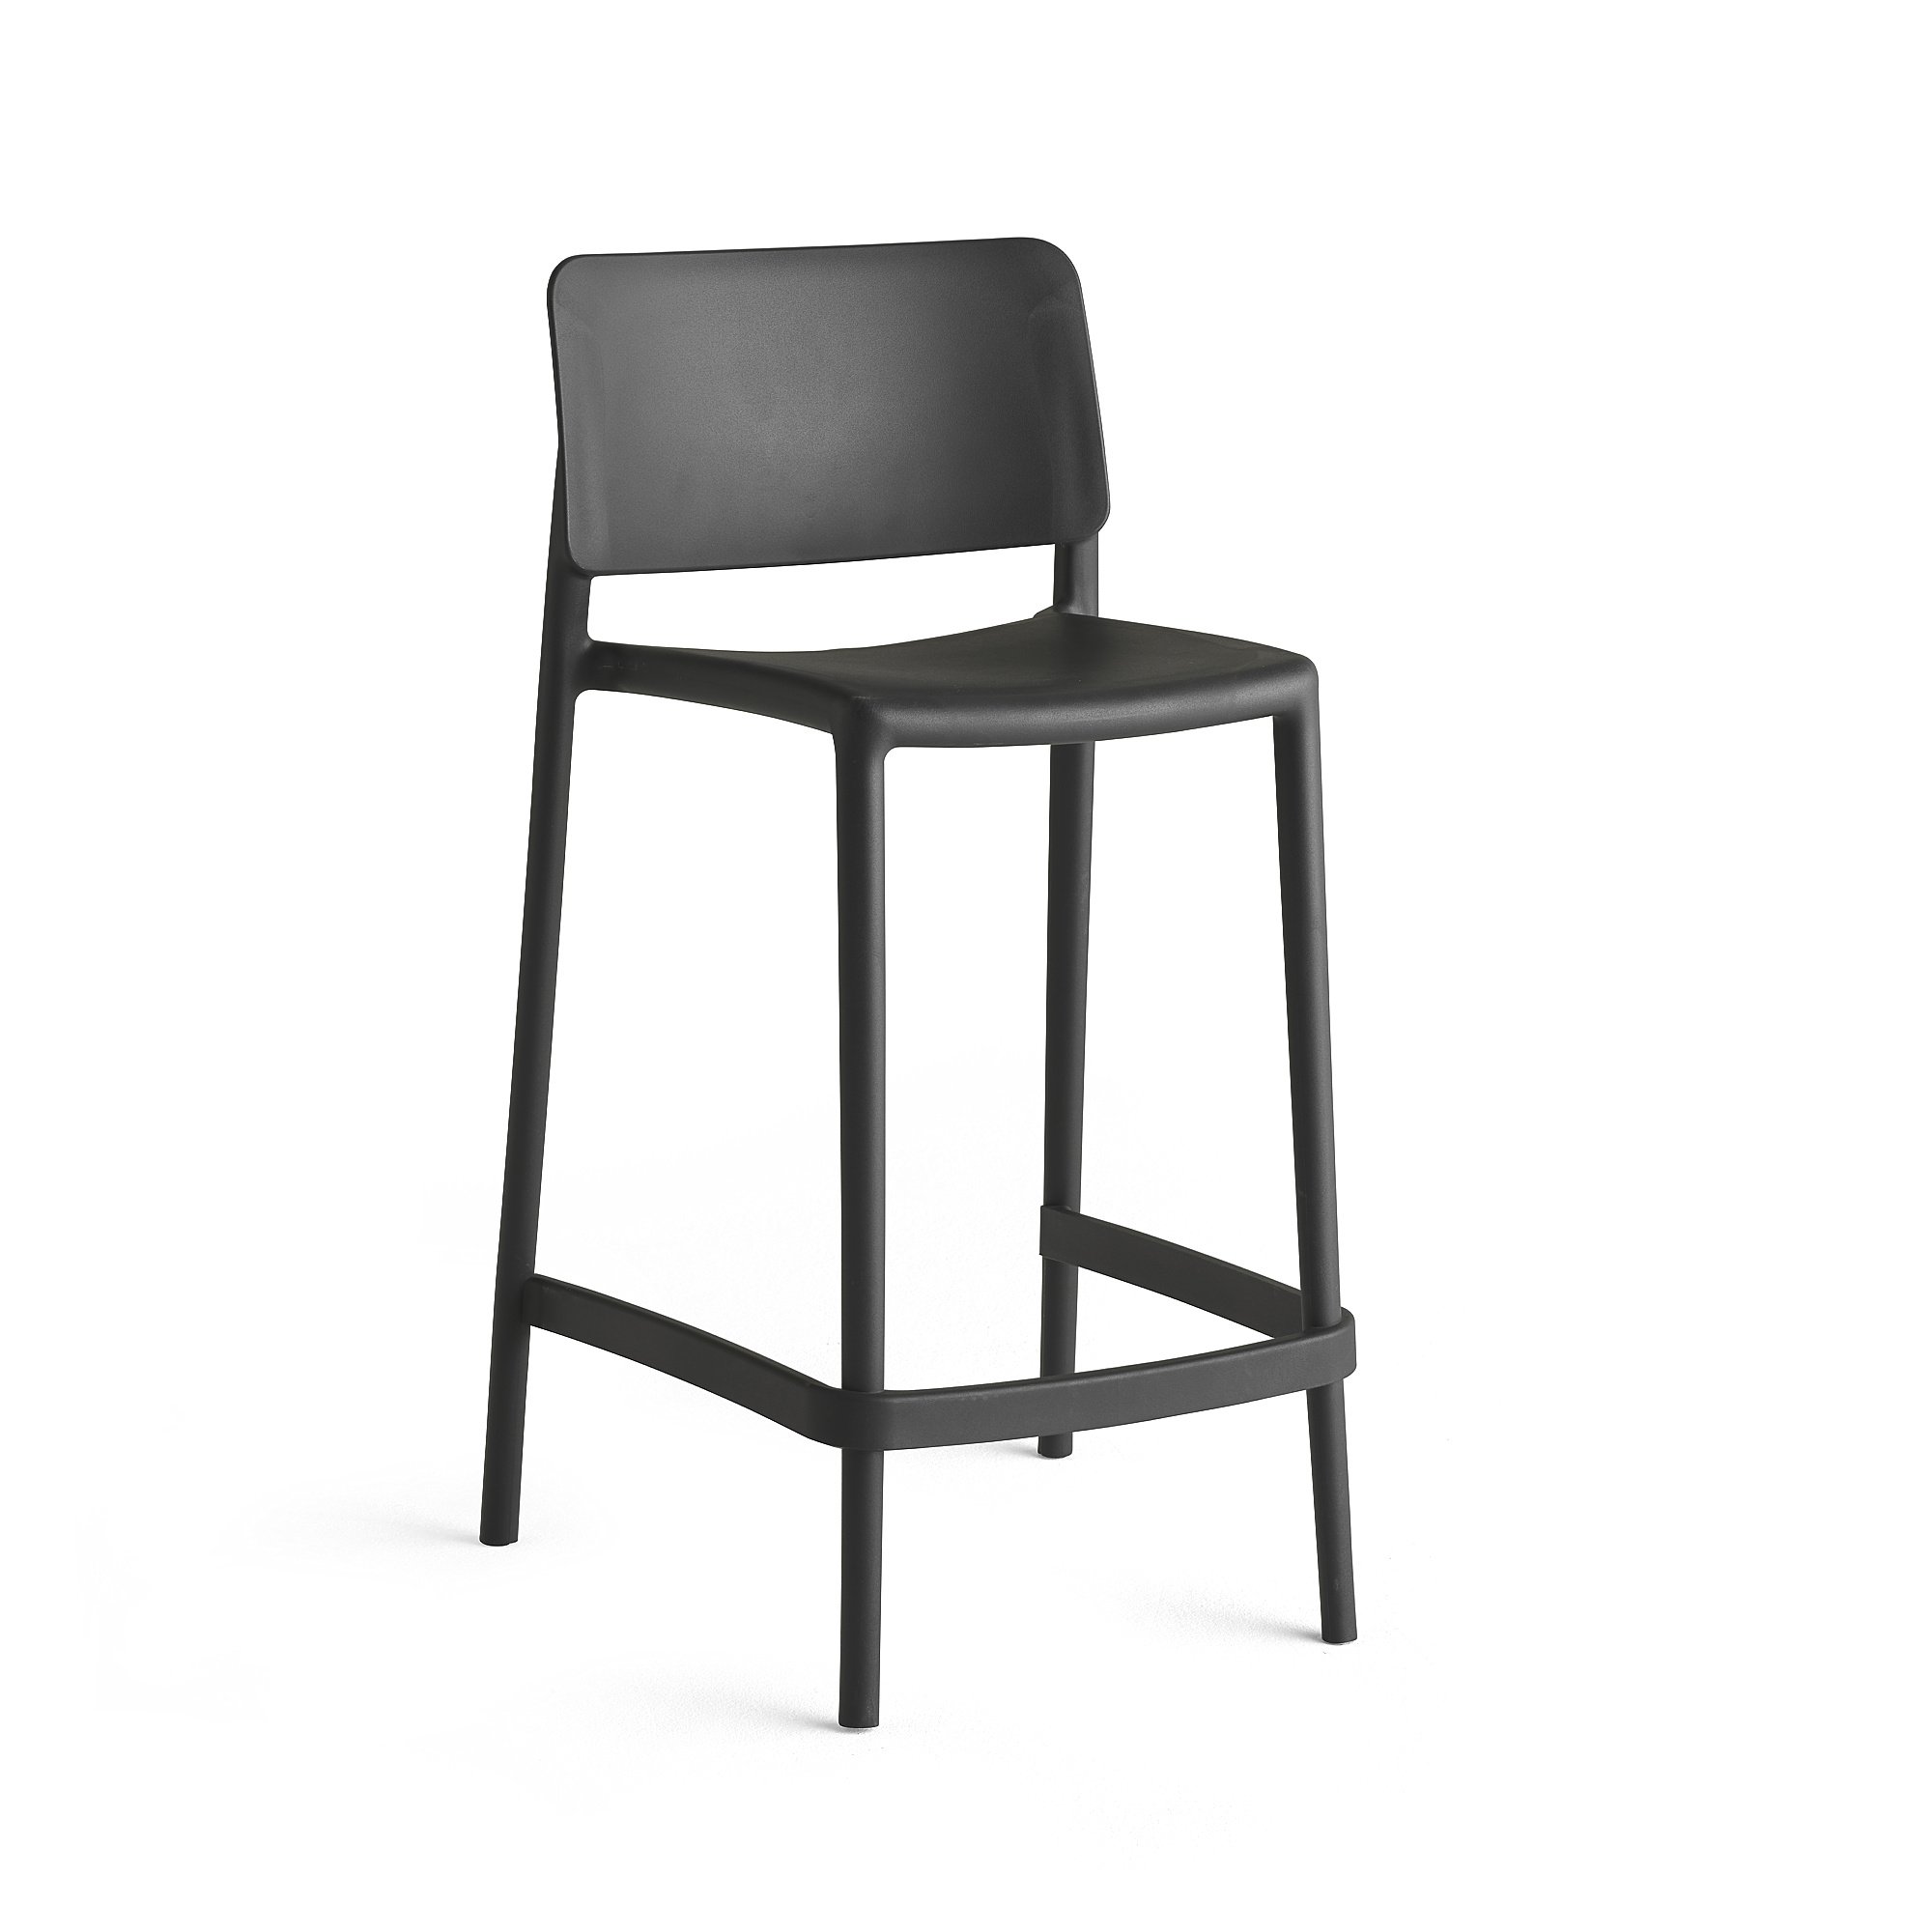 E-shop Barová stolička RIO, výška sedáku 650 mm, tmavošedá